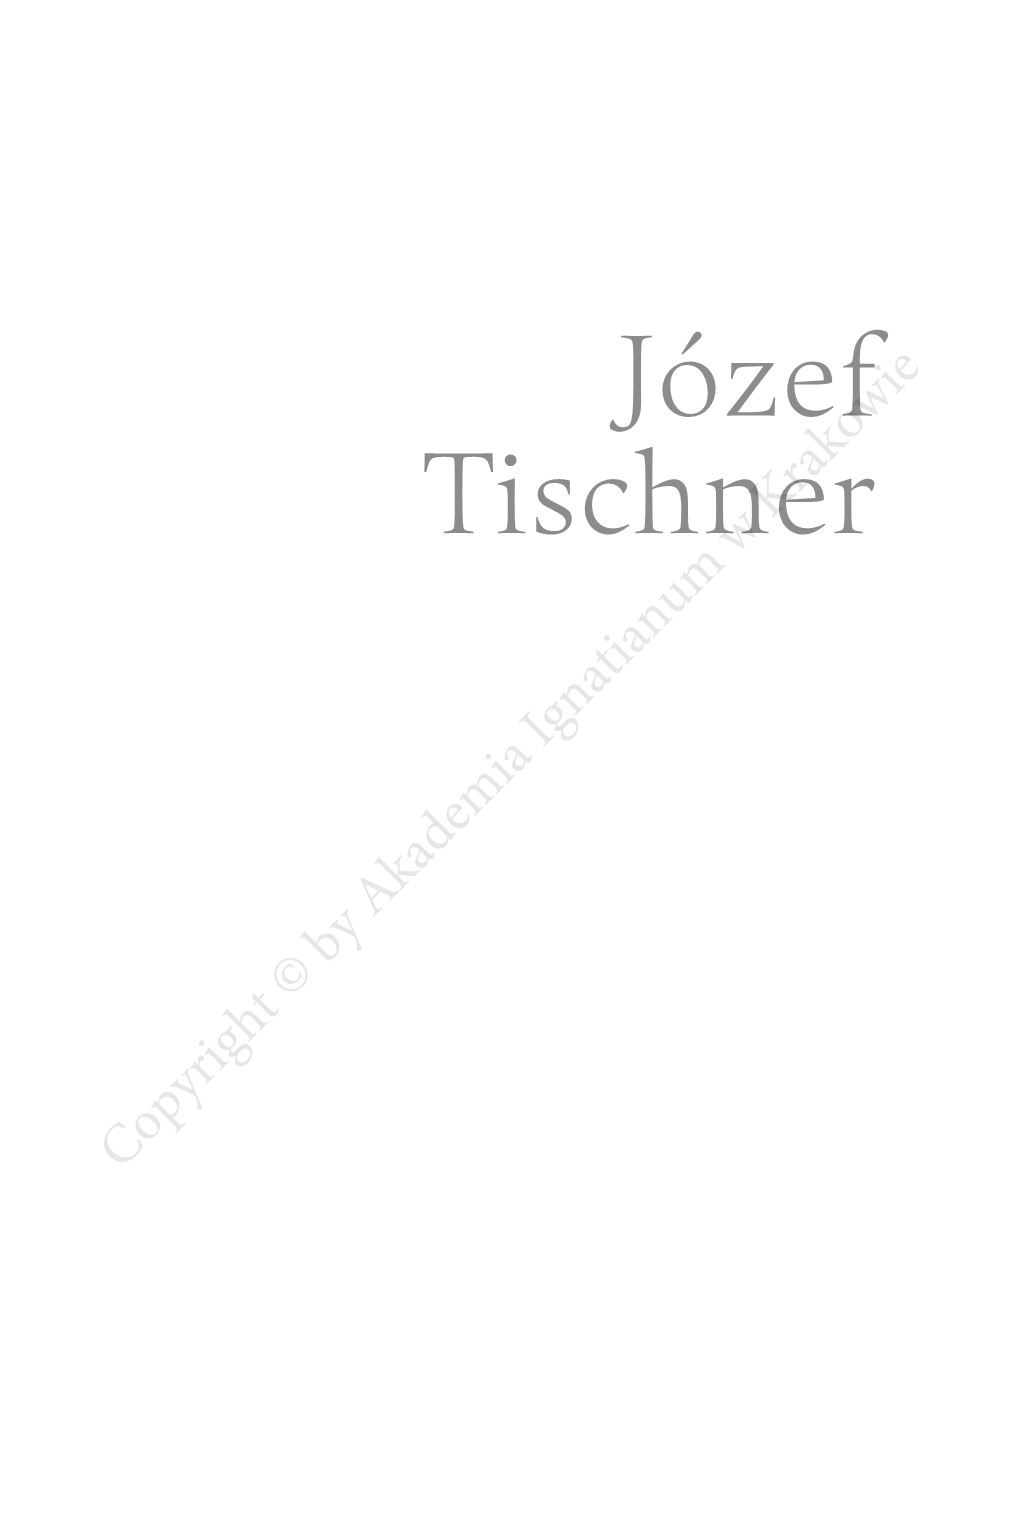 Józef Tischner Karol Wojtyła Jacek Woroniecki Zoﬁa Józefa Zdybickakrakowie the Companion to the Polish Christian Philosophy in Thew 20Th Century